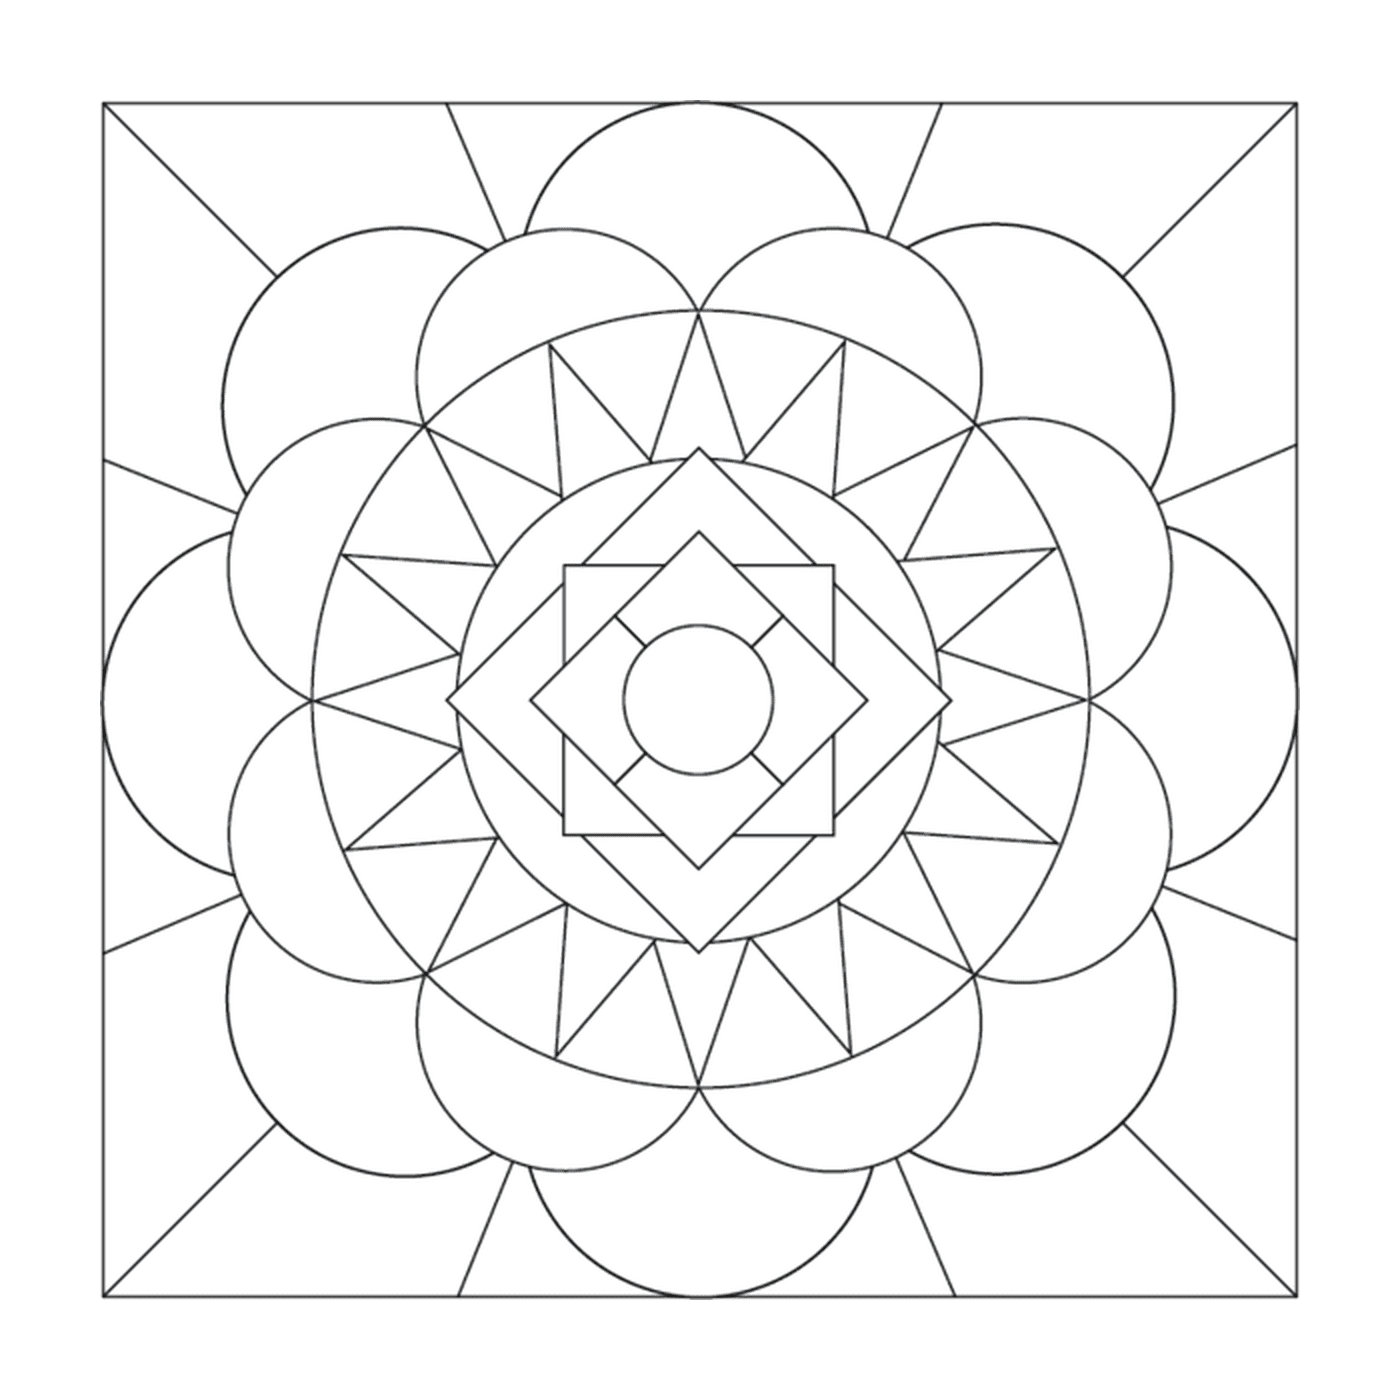  Un disegno geometrico interessante 